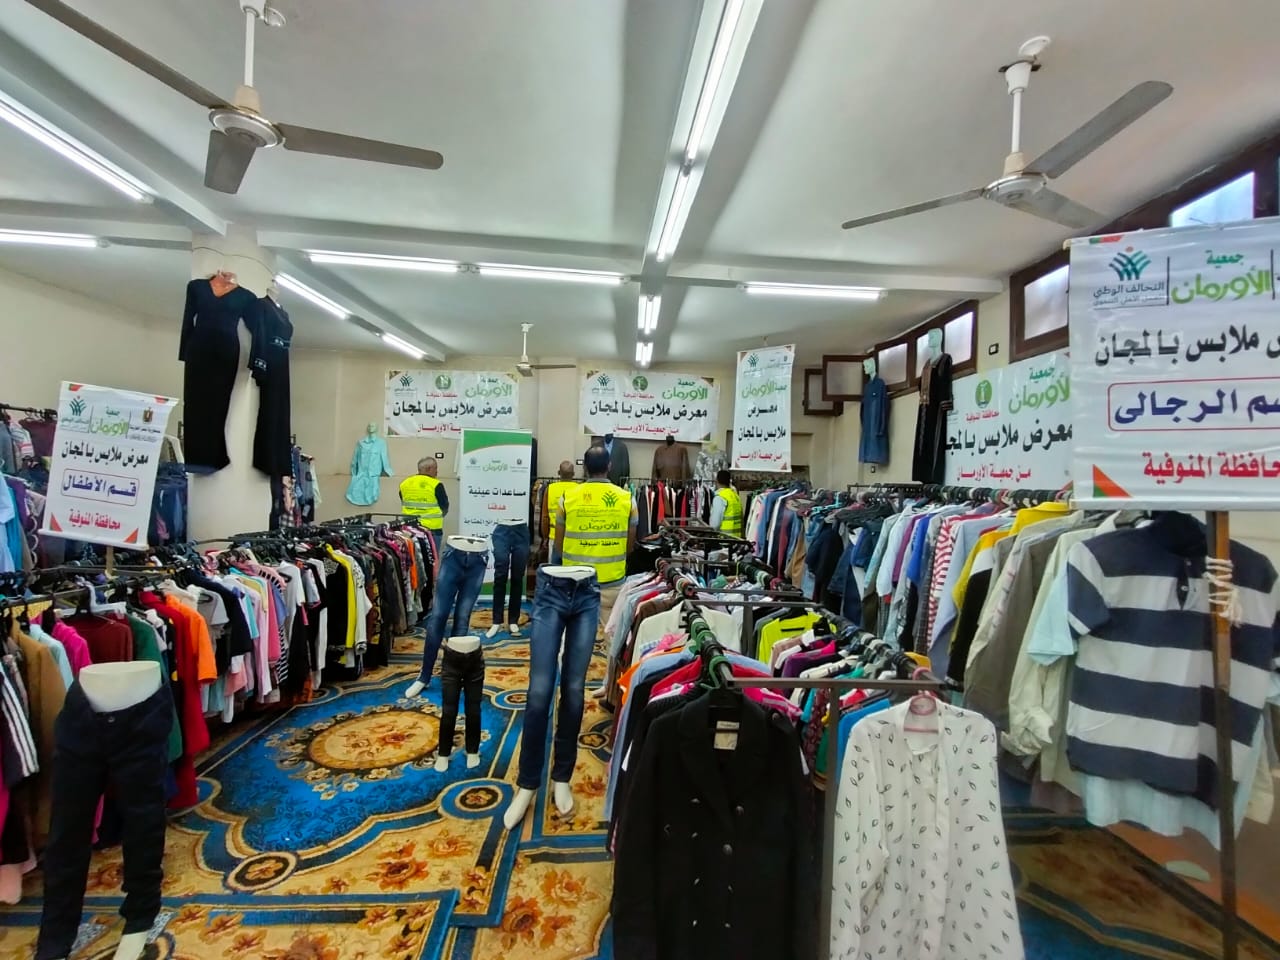 تنظيم معرض لتوزيع الملابس الجديدة بقرى مركز الشهداء بالمنوفية | صور	